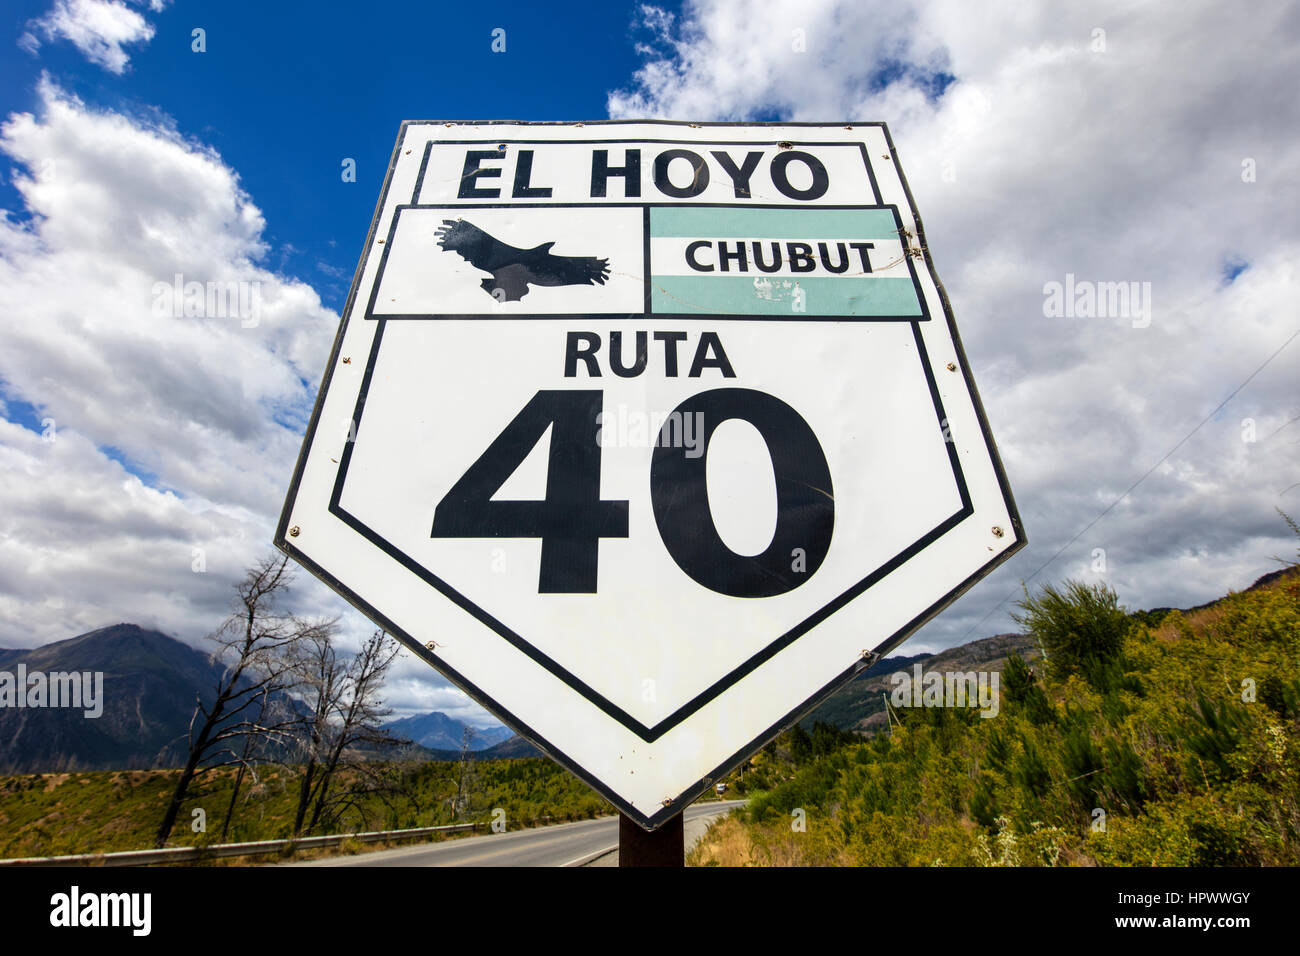 Ruta 40 El Hoyo panneau routier. Chubut, Patagonie, Argentine. Banque D'Images